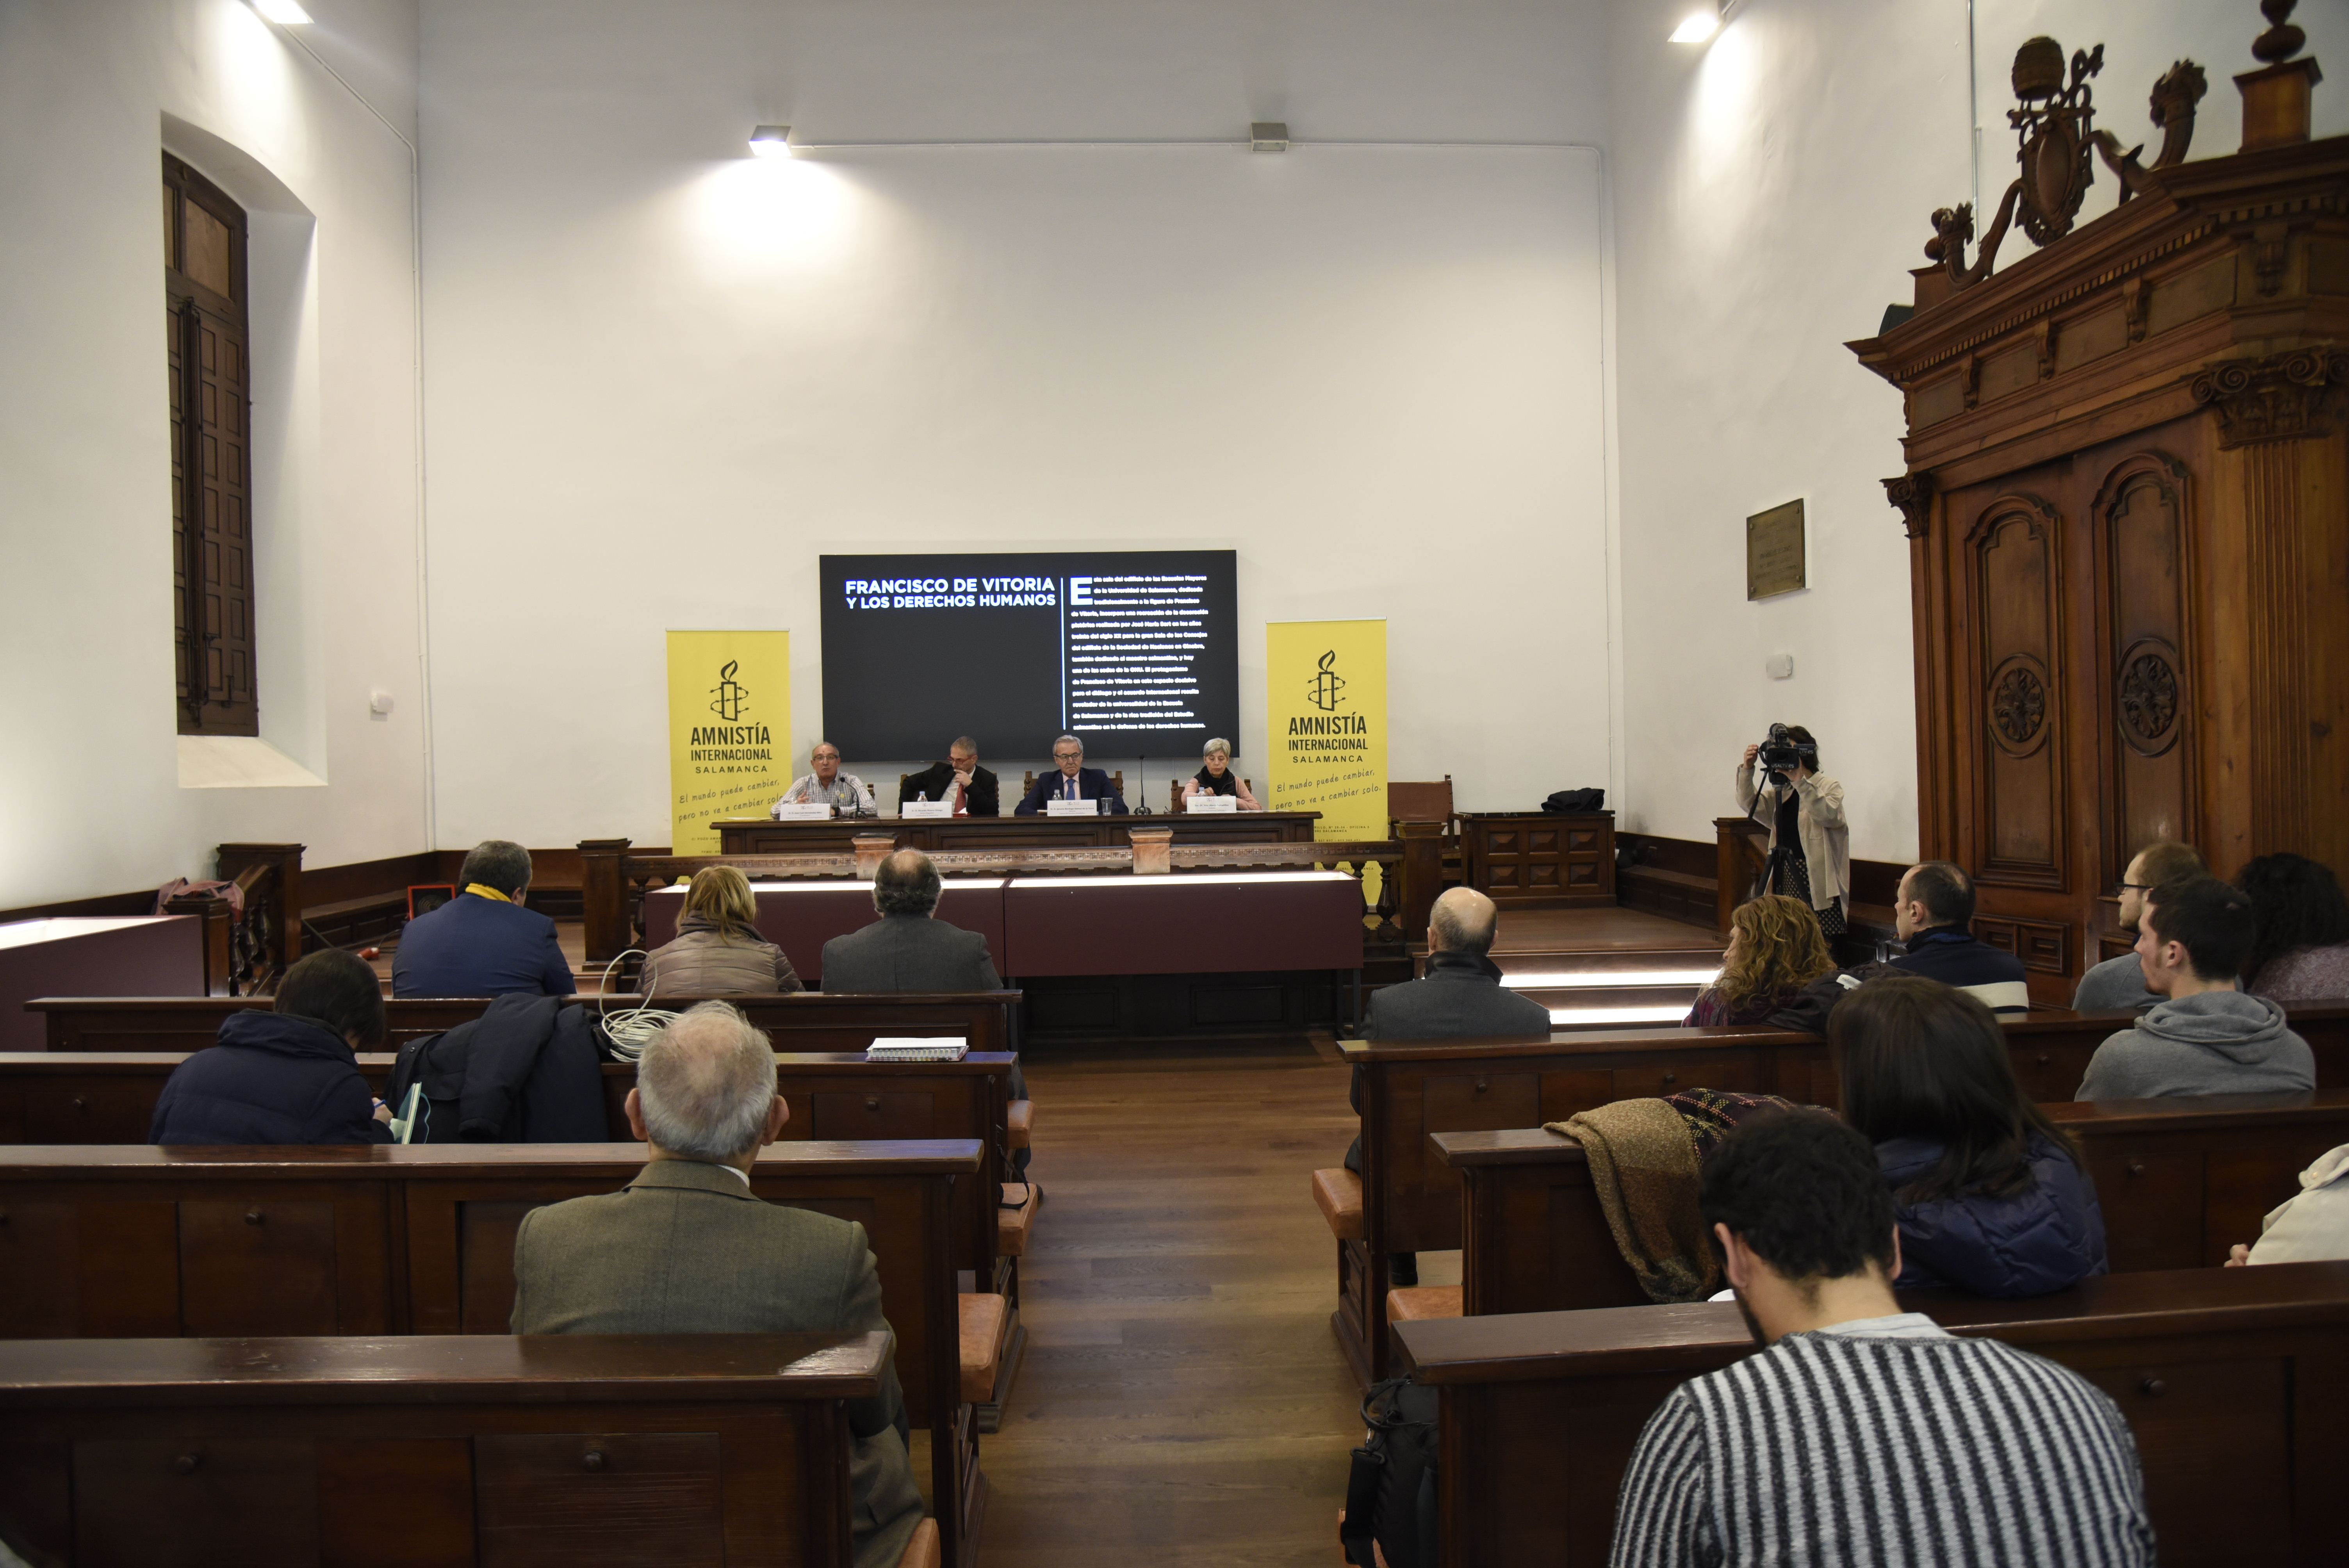 La Universidad de Salamanca acoge el acto conmemorativo por el 40º aniversario de Amnistía Internacional en España